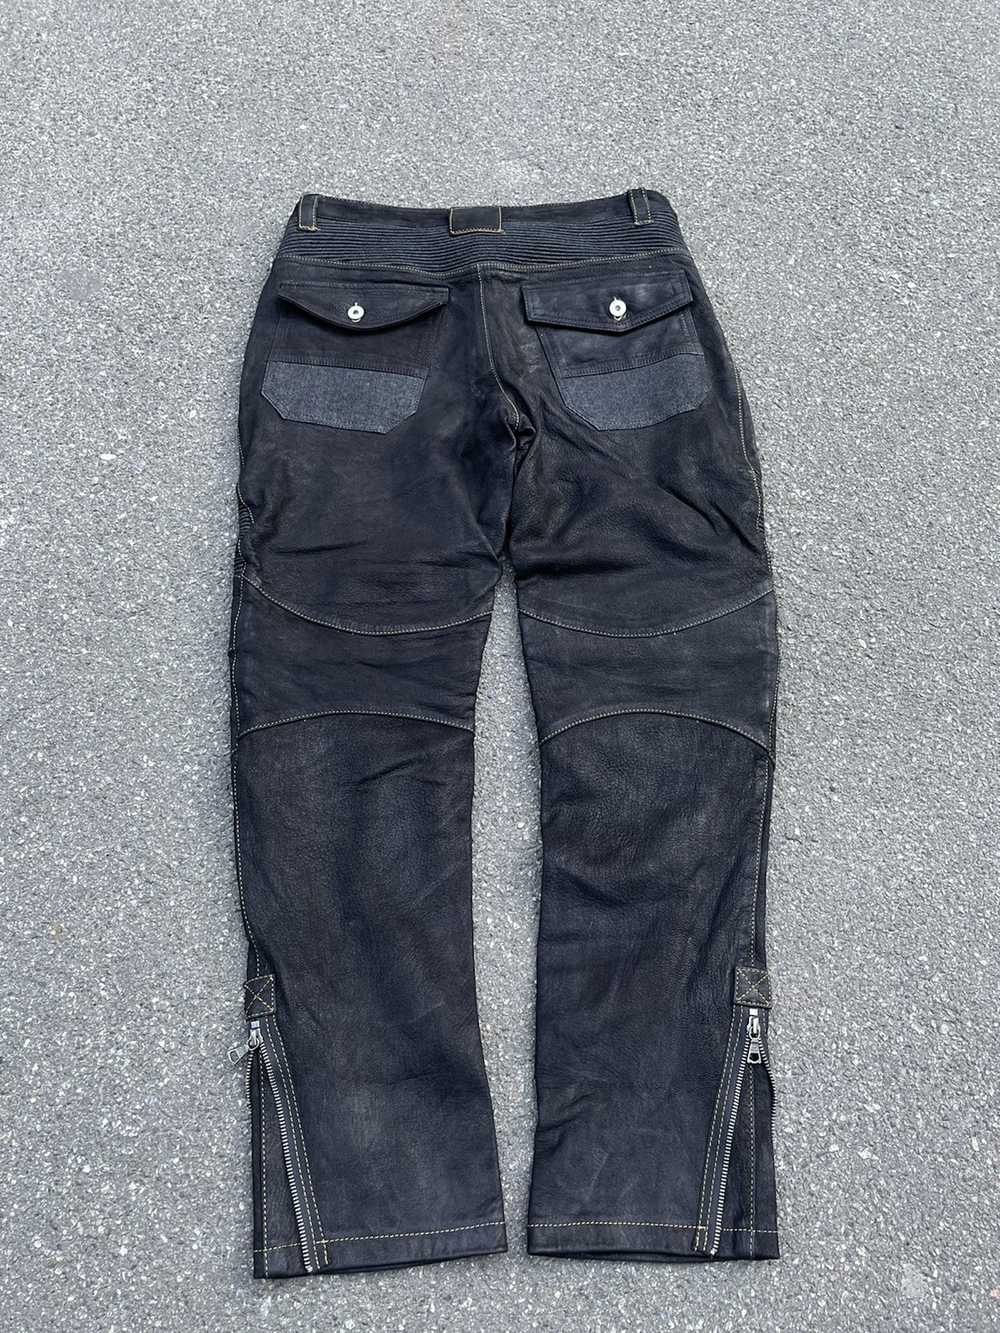 Biker Jeans × Genuine Leather × Vintage Vintage C… - image 8